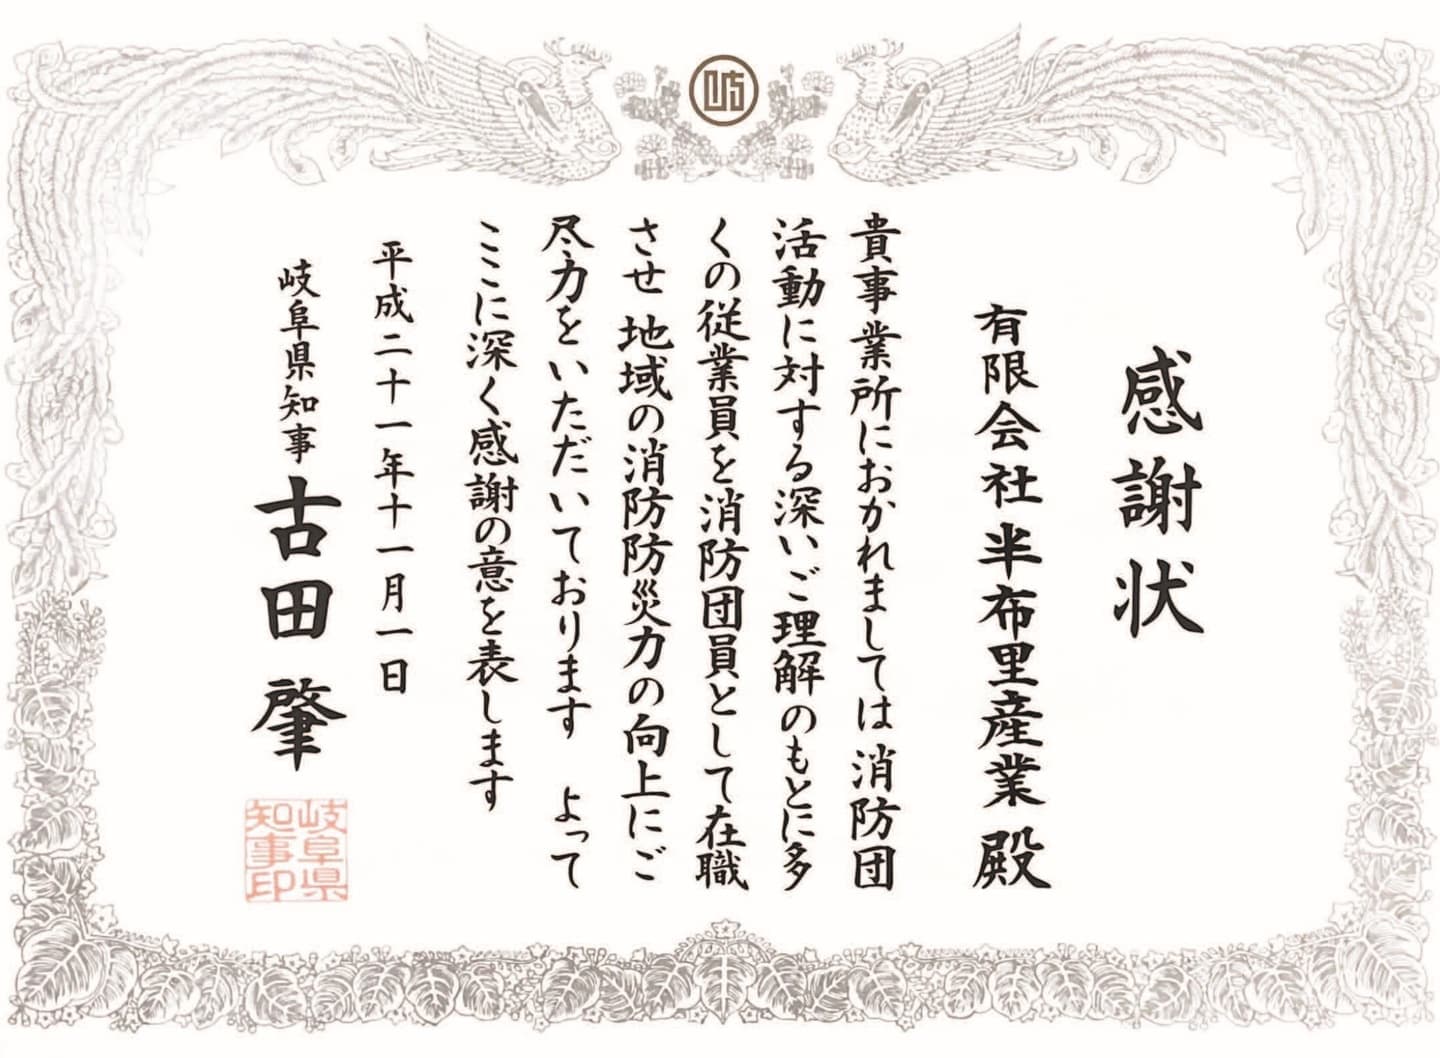 半布里産業の地元消防団への貢献が岐阜県知事より表彰されました